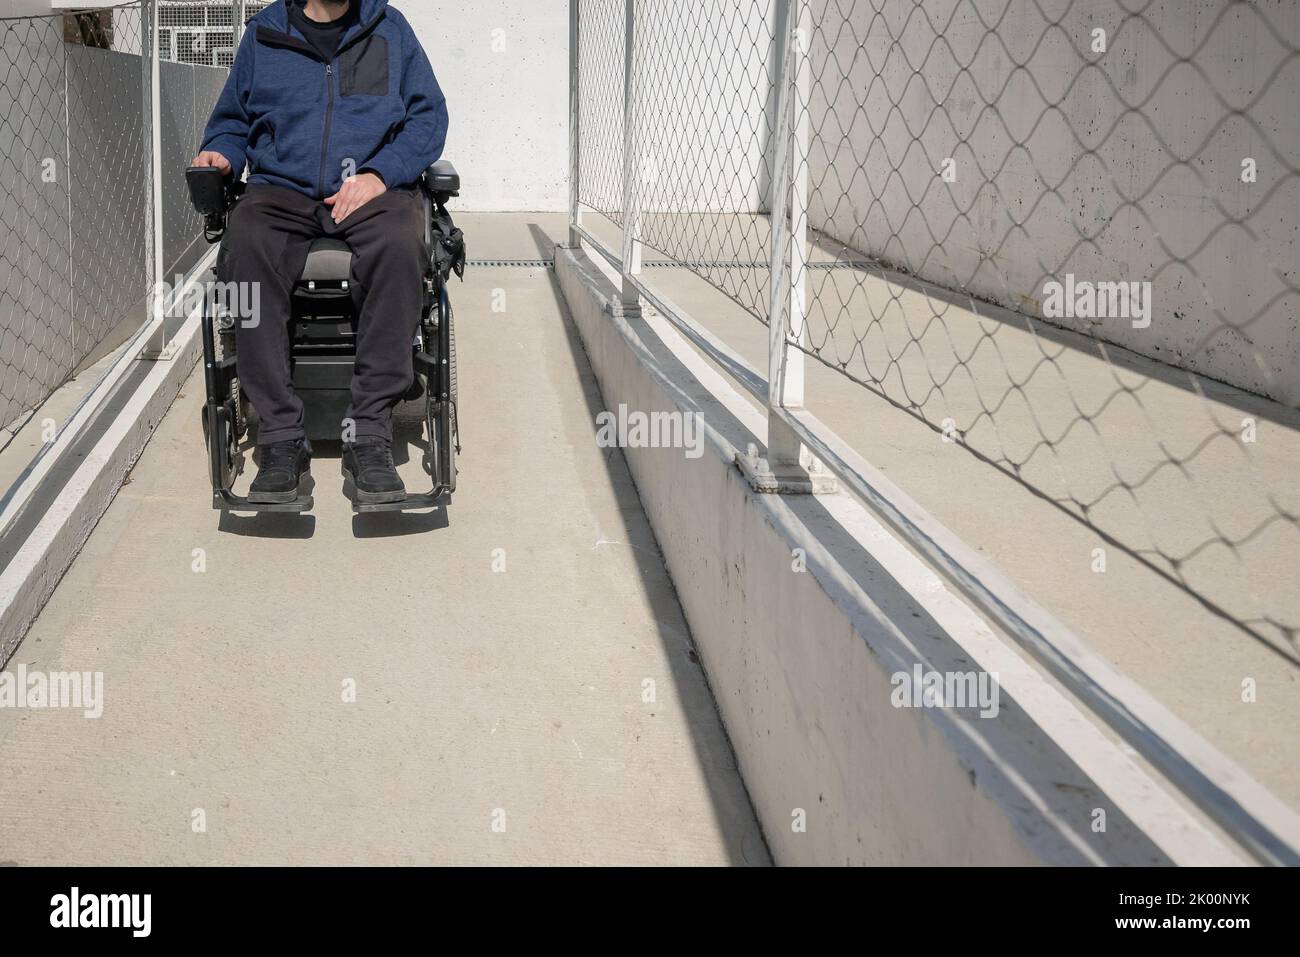 Mann auf einem elektrischen Rollstuhl, der sich entlang eines Betonwegs in der Nähe des Gebäudes bewegt. Konzept des Rollstuhlzugangs erleichtert. Stockfoto